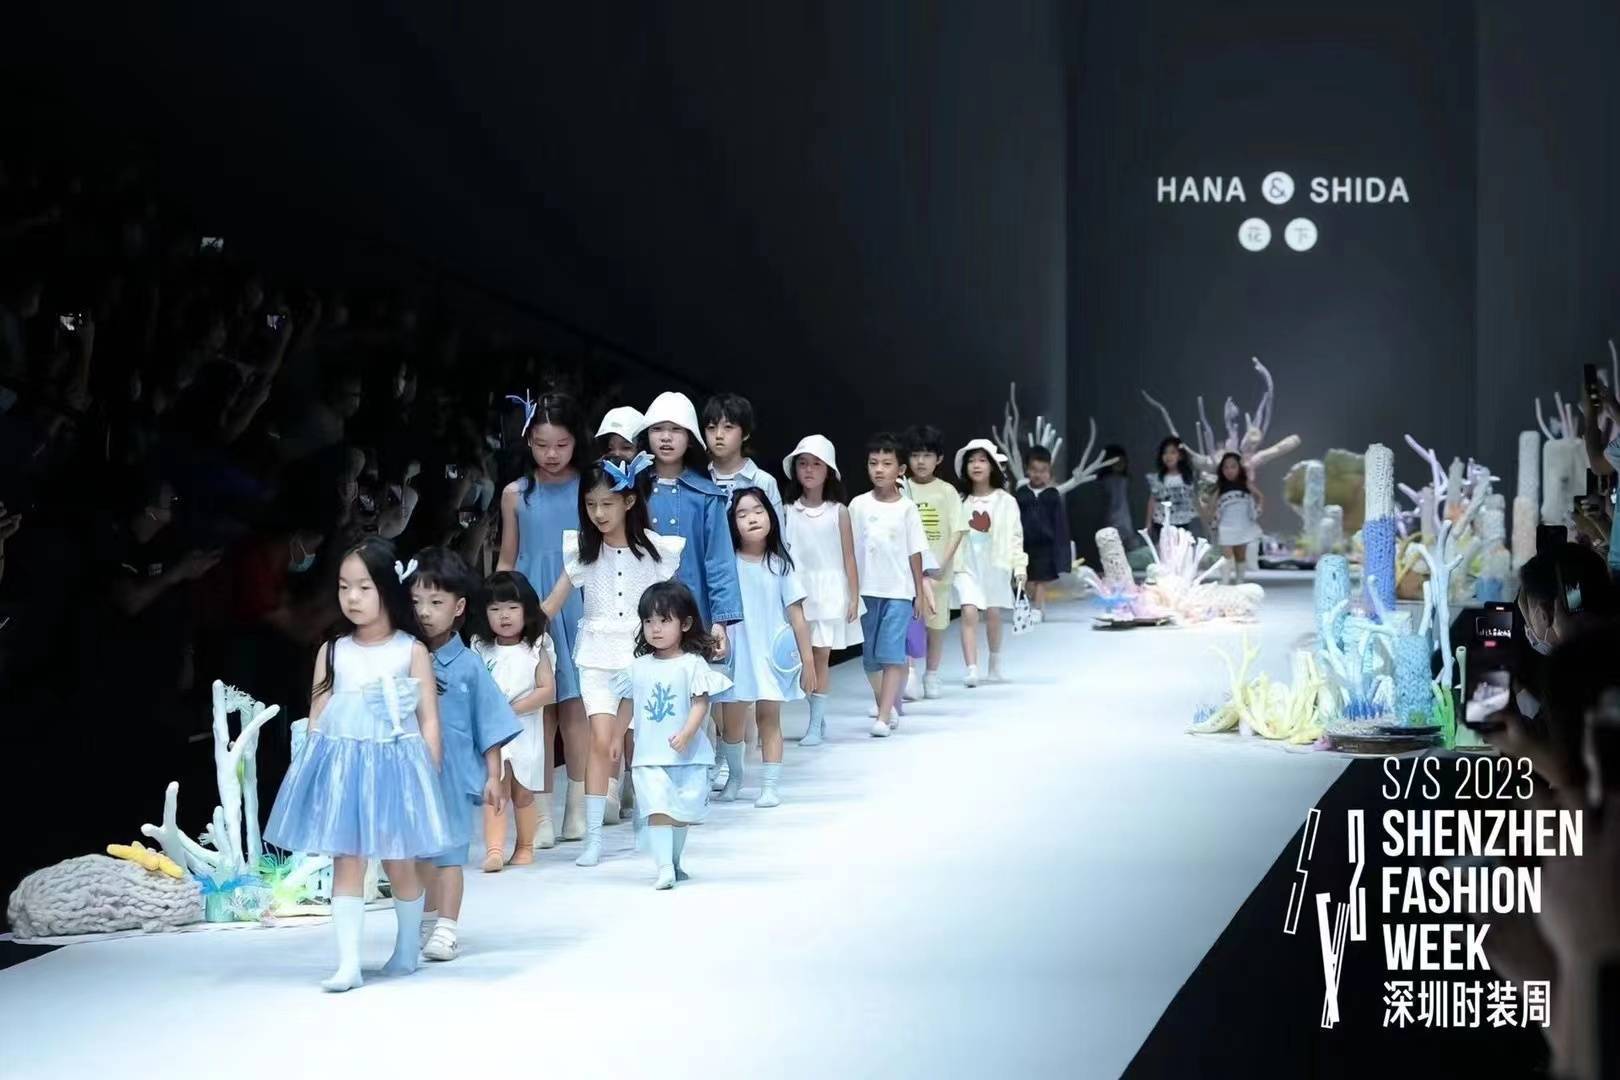 60个小模特,五大童装品牌,为s/s 2023深圳时装周带来